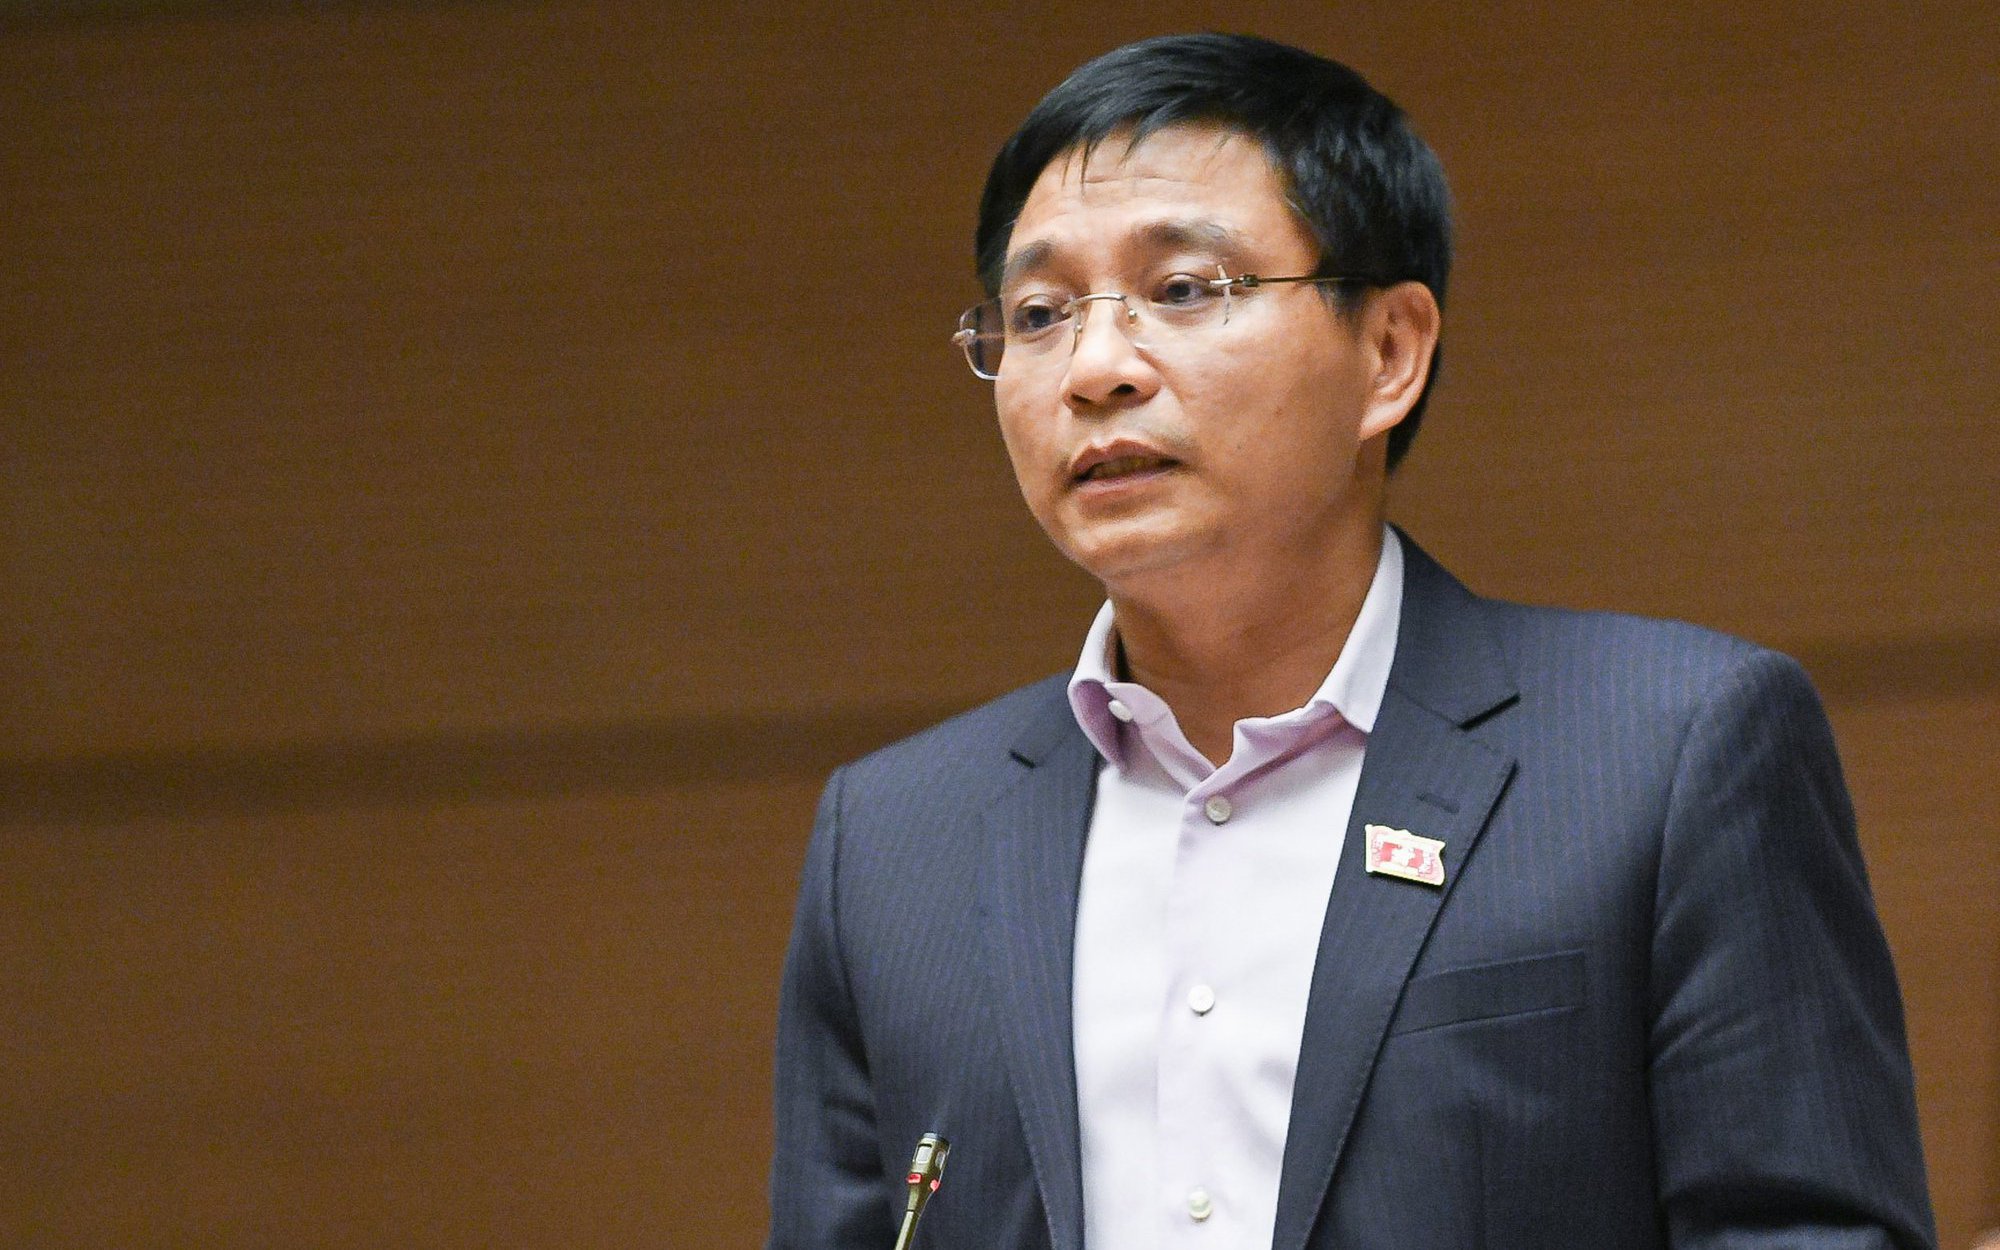 ĐBQH nói gì về lần đầu tiên trả lời chất vấn của tân Bộ trưởng Nguyễn Văn Thắng?